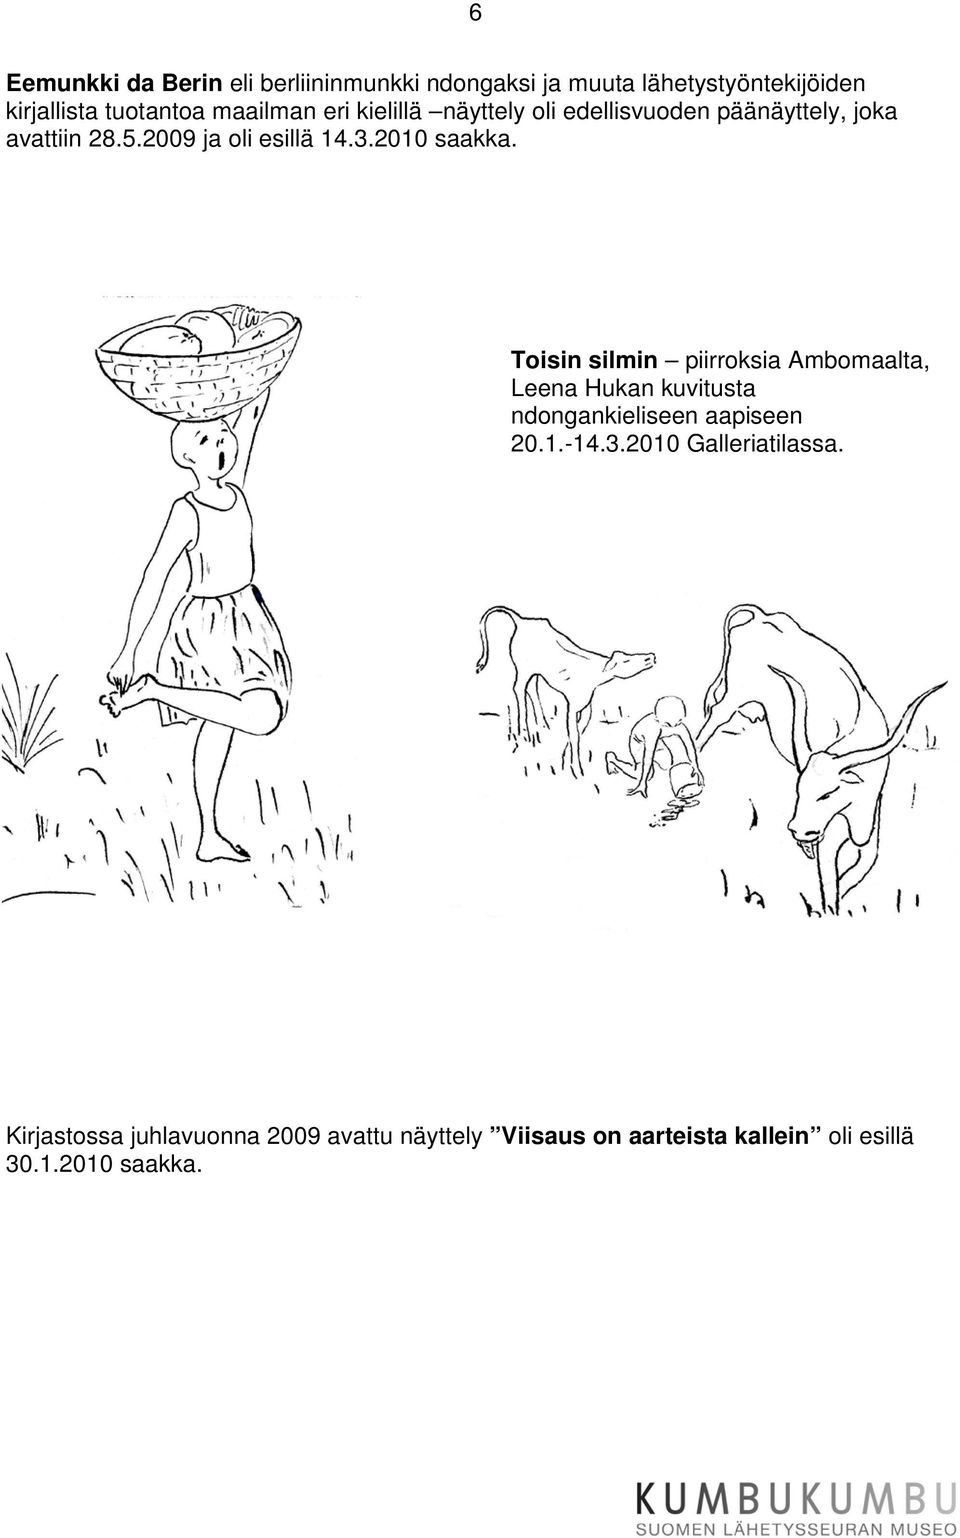 2010 saakka. Toisin silmin piirroksia Ambomaalta, Leena Hukan kuvitusta ndongankieliseen aapiseen 20.1.-14.3.